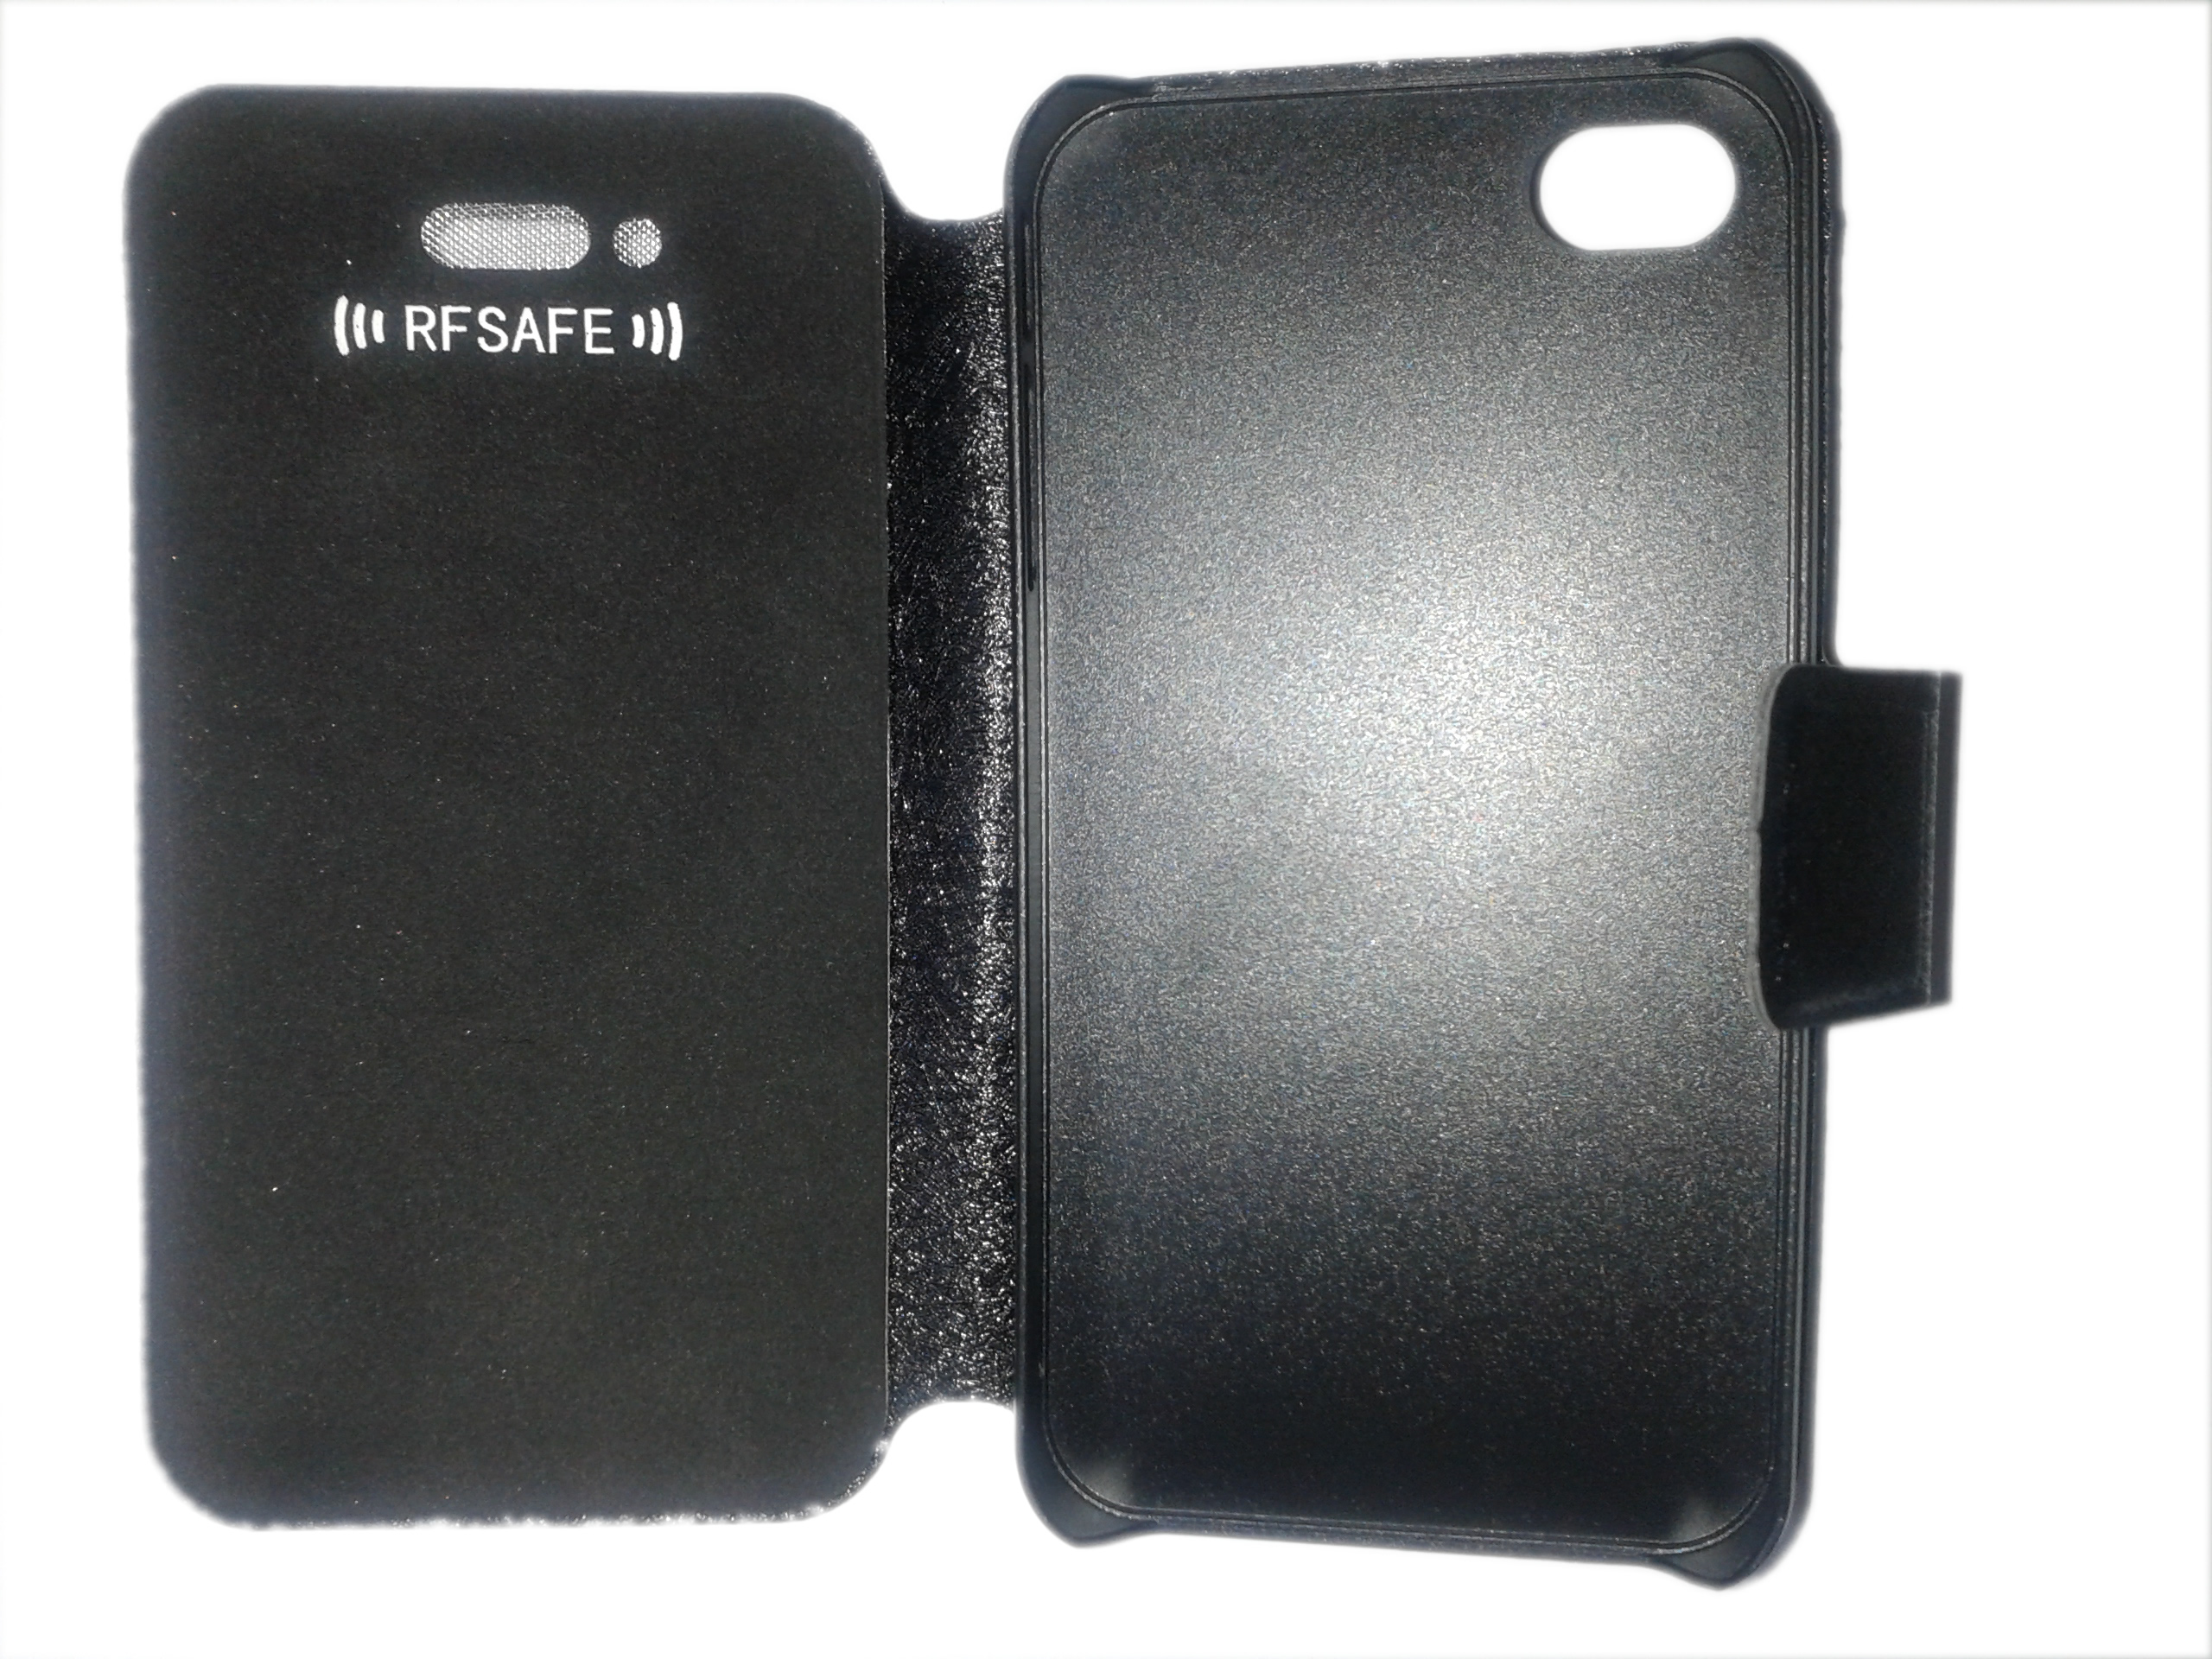 Toegeven gevoeligheid aanvaarden Apple iPhone 4 Flip Cover Case – RF Safe